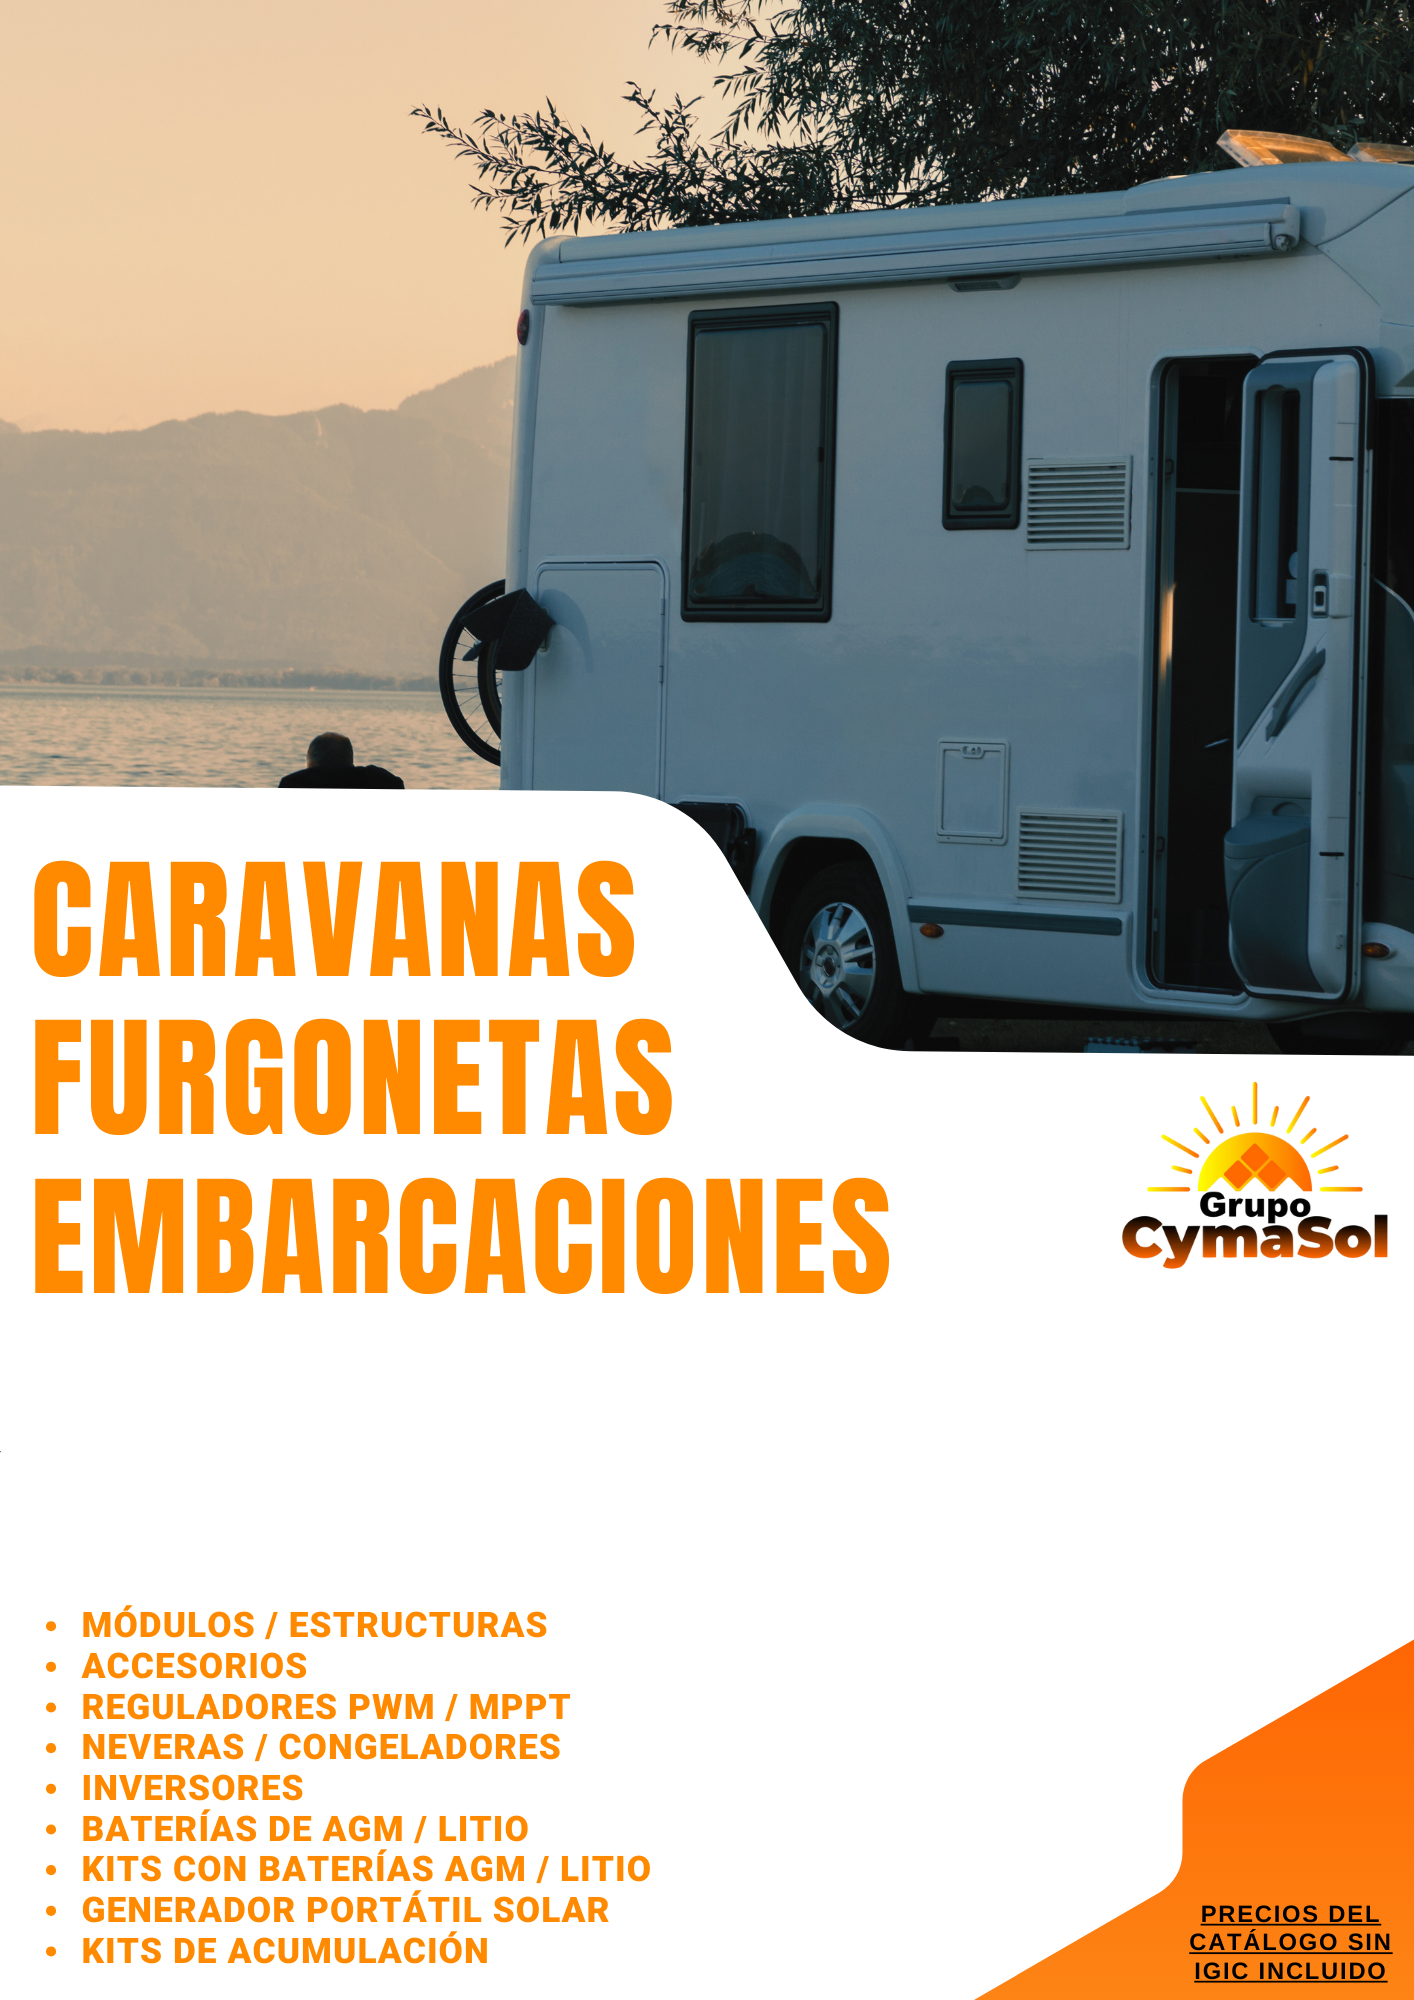 CATALOGO_CARAVANAS,_FURGONETAS_Y_EMBARCACIONES_CYM-POWER